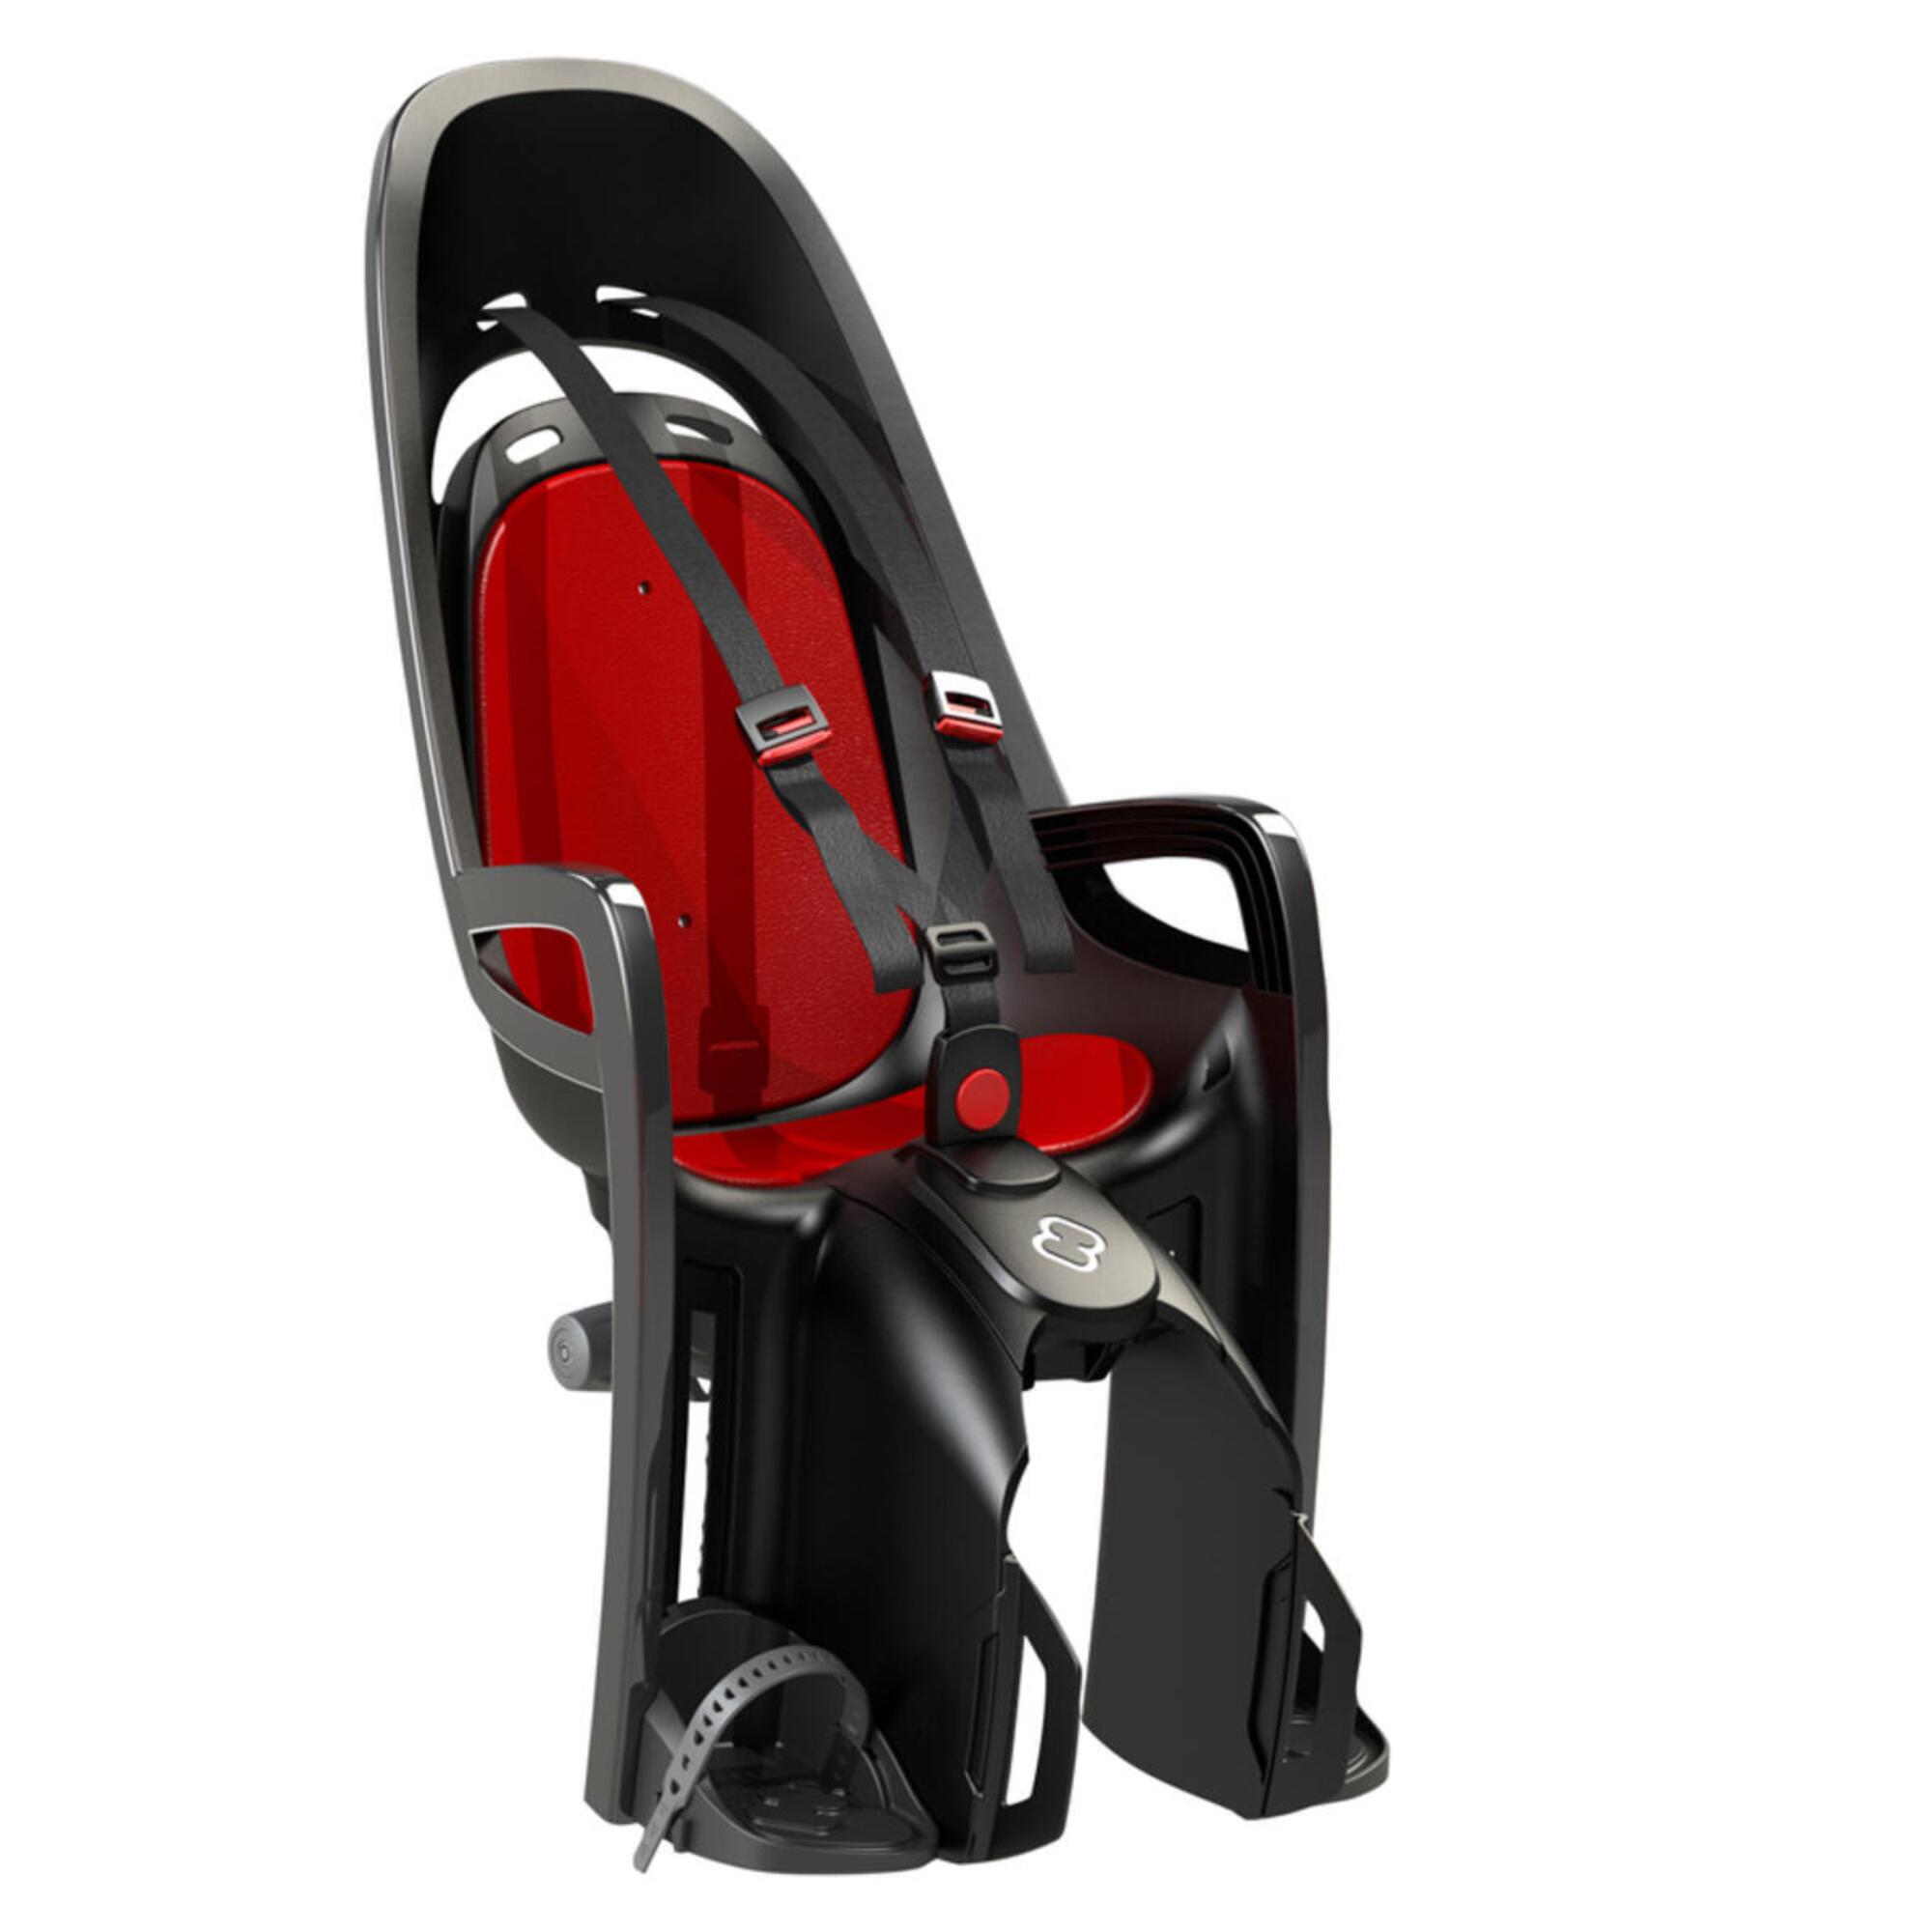 детское кресло hamax zenith адаптер для переноски серый серый красный Детское кресло Hamax Zenith+адаптер для переноски, серый / серый / красный